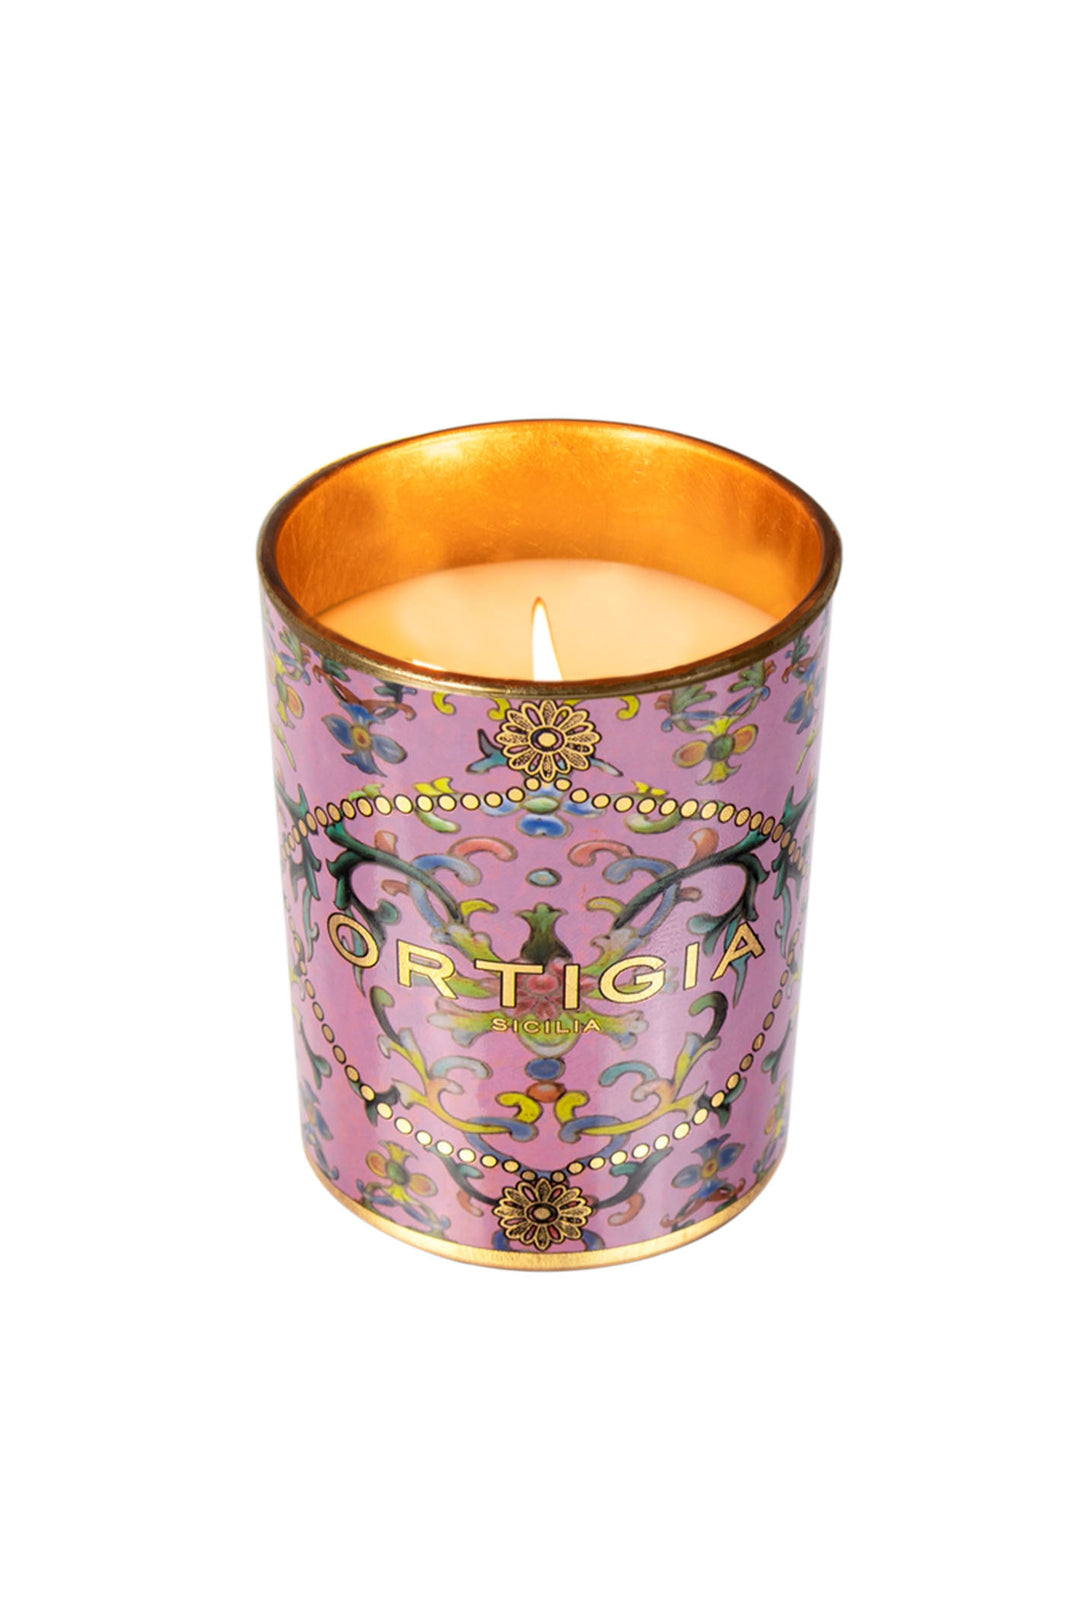 Ortigia Sicilia Aragona Perfumed Round Decorated Candle - Olivia Grace Fashion